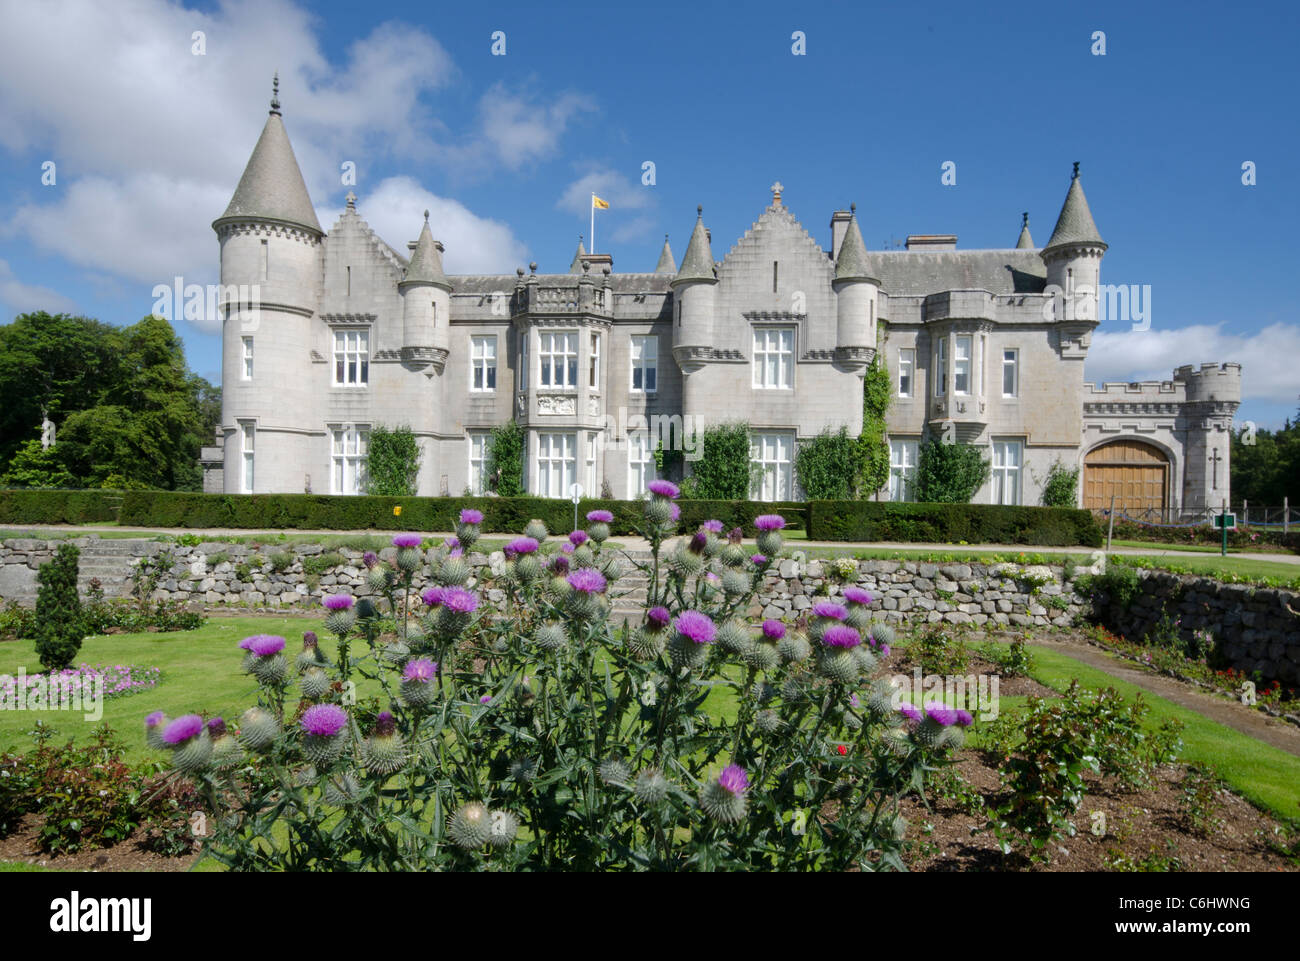 El castillo de Balmoral Royal Deeside - Queen's residencia vista del castillo desde los jardines formales con Scottish thistle en primer plano Foto de stock